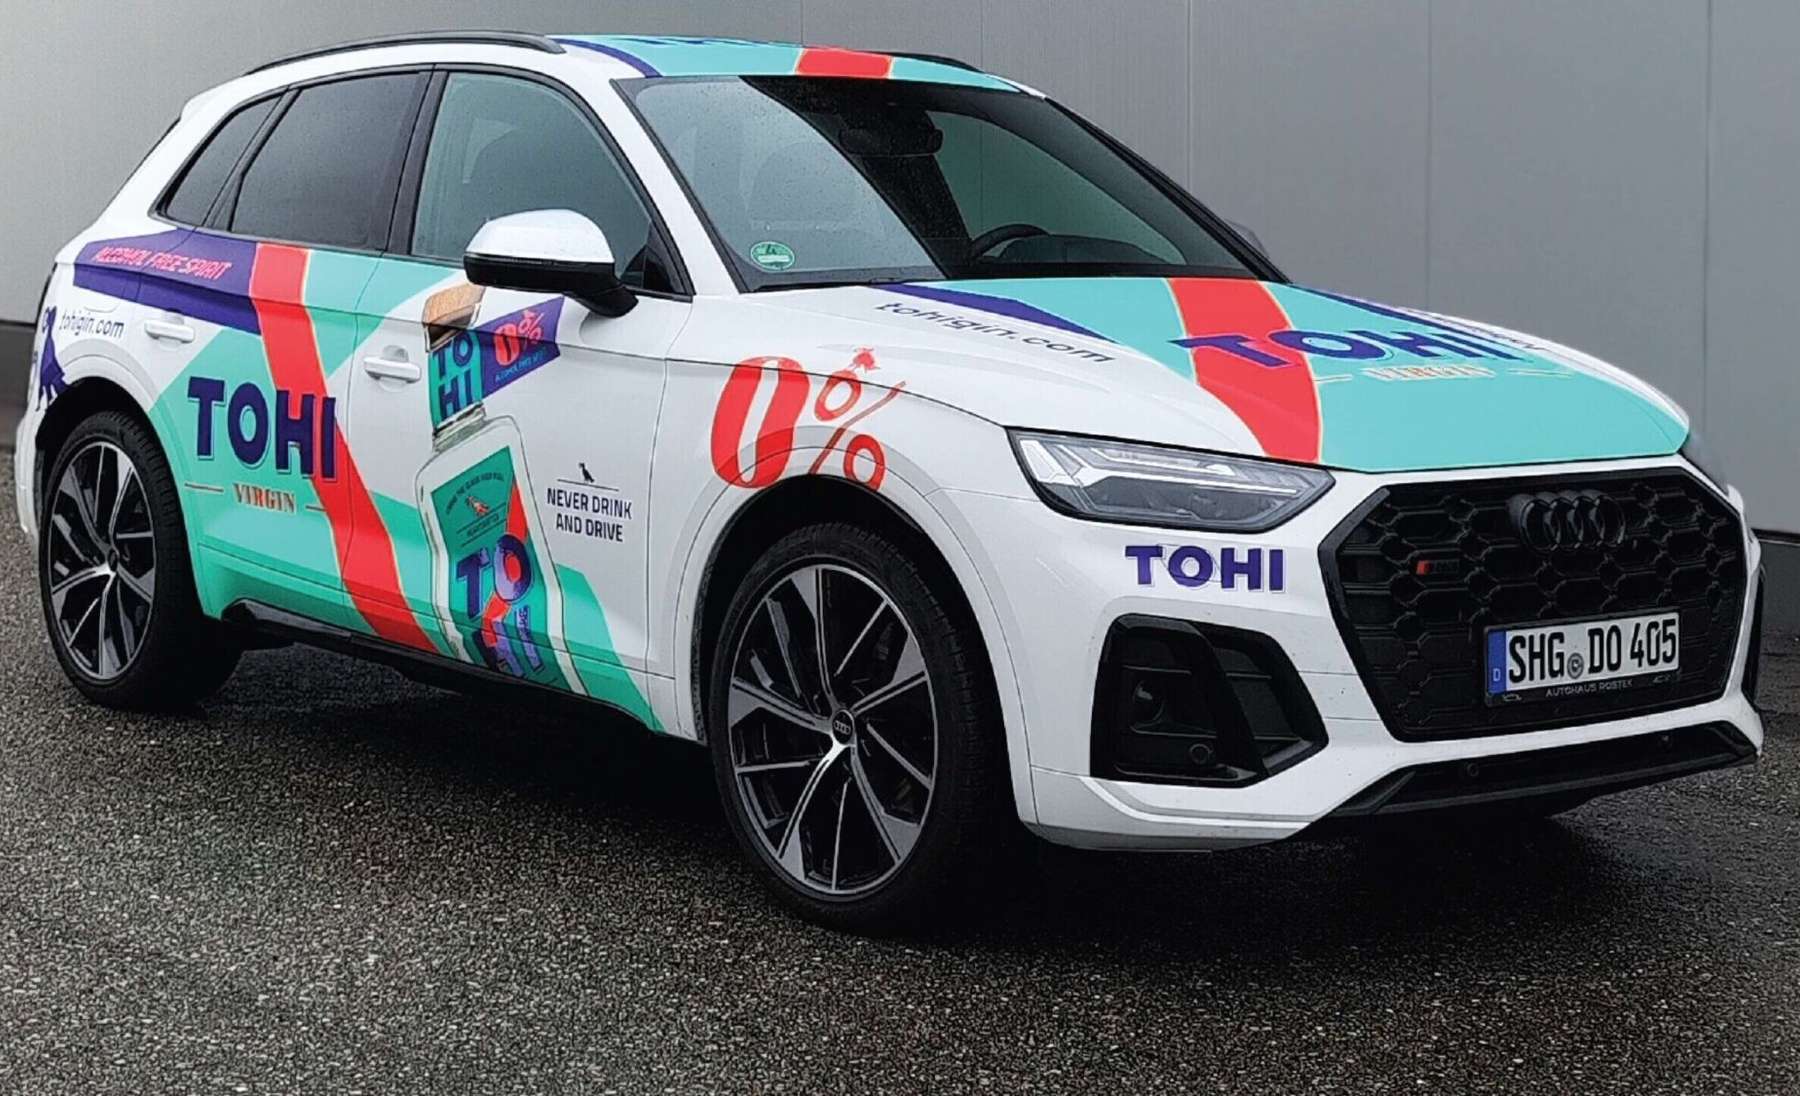 Kesk-Euroopa WRC ralli kiiruskatsetel saab näha TOHI värvides ühte ralli turva- ehk nullautot.